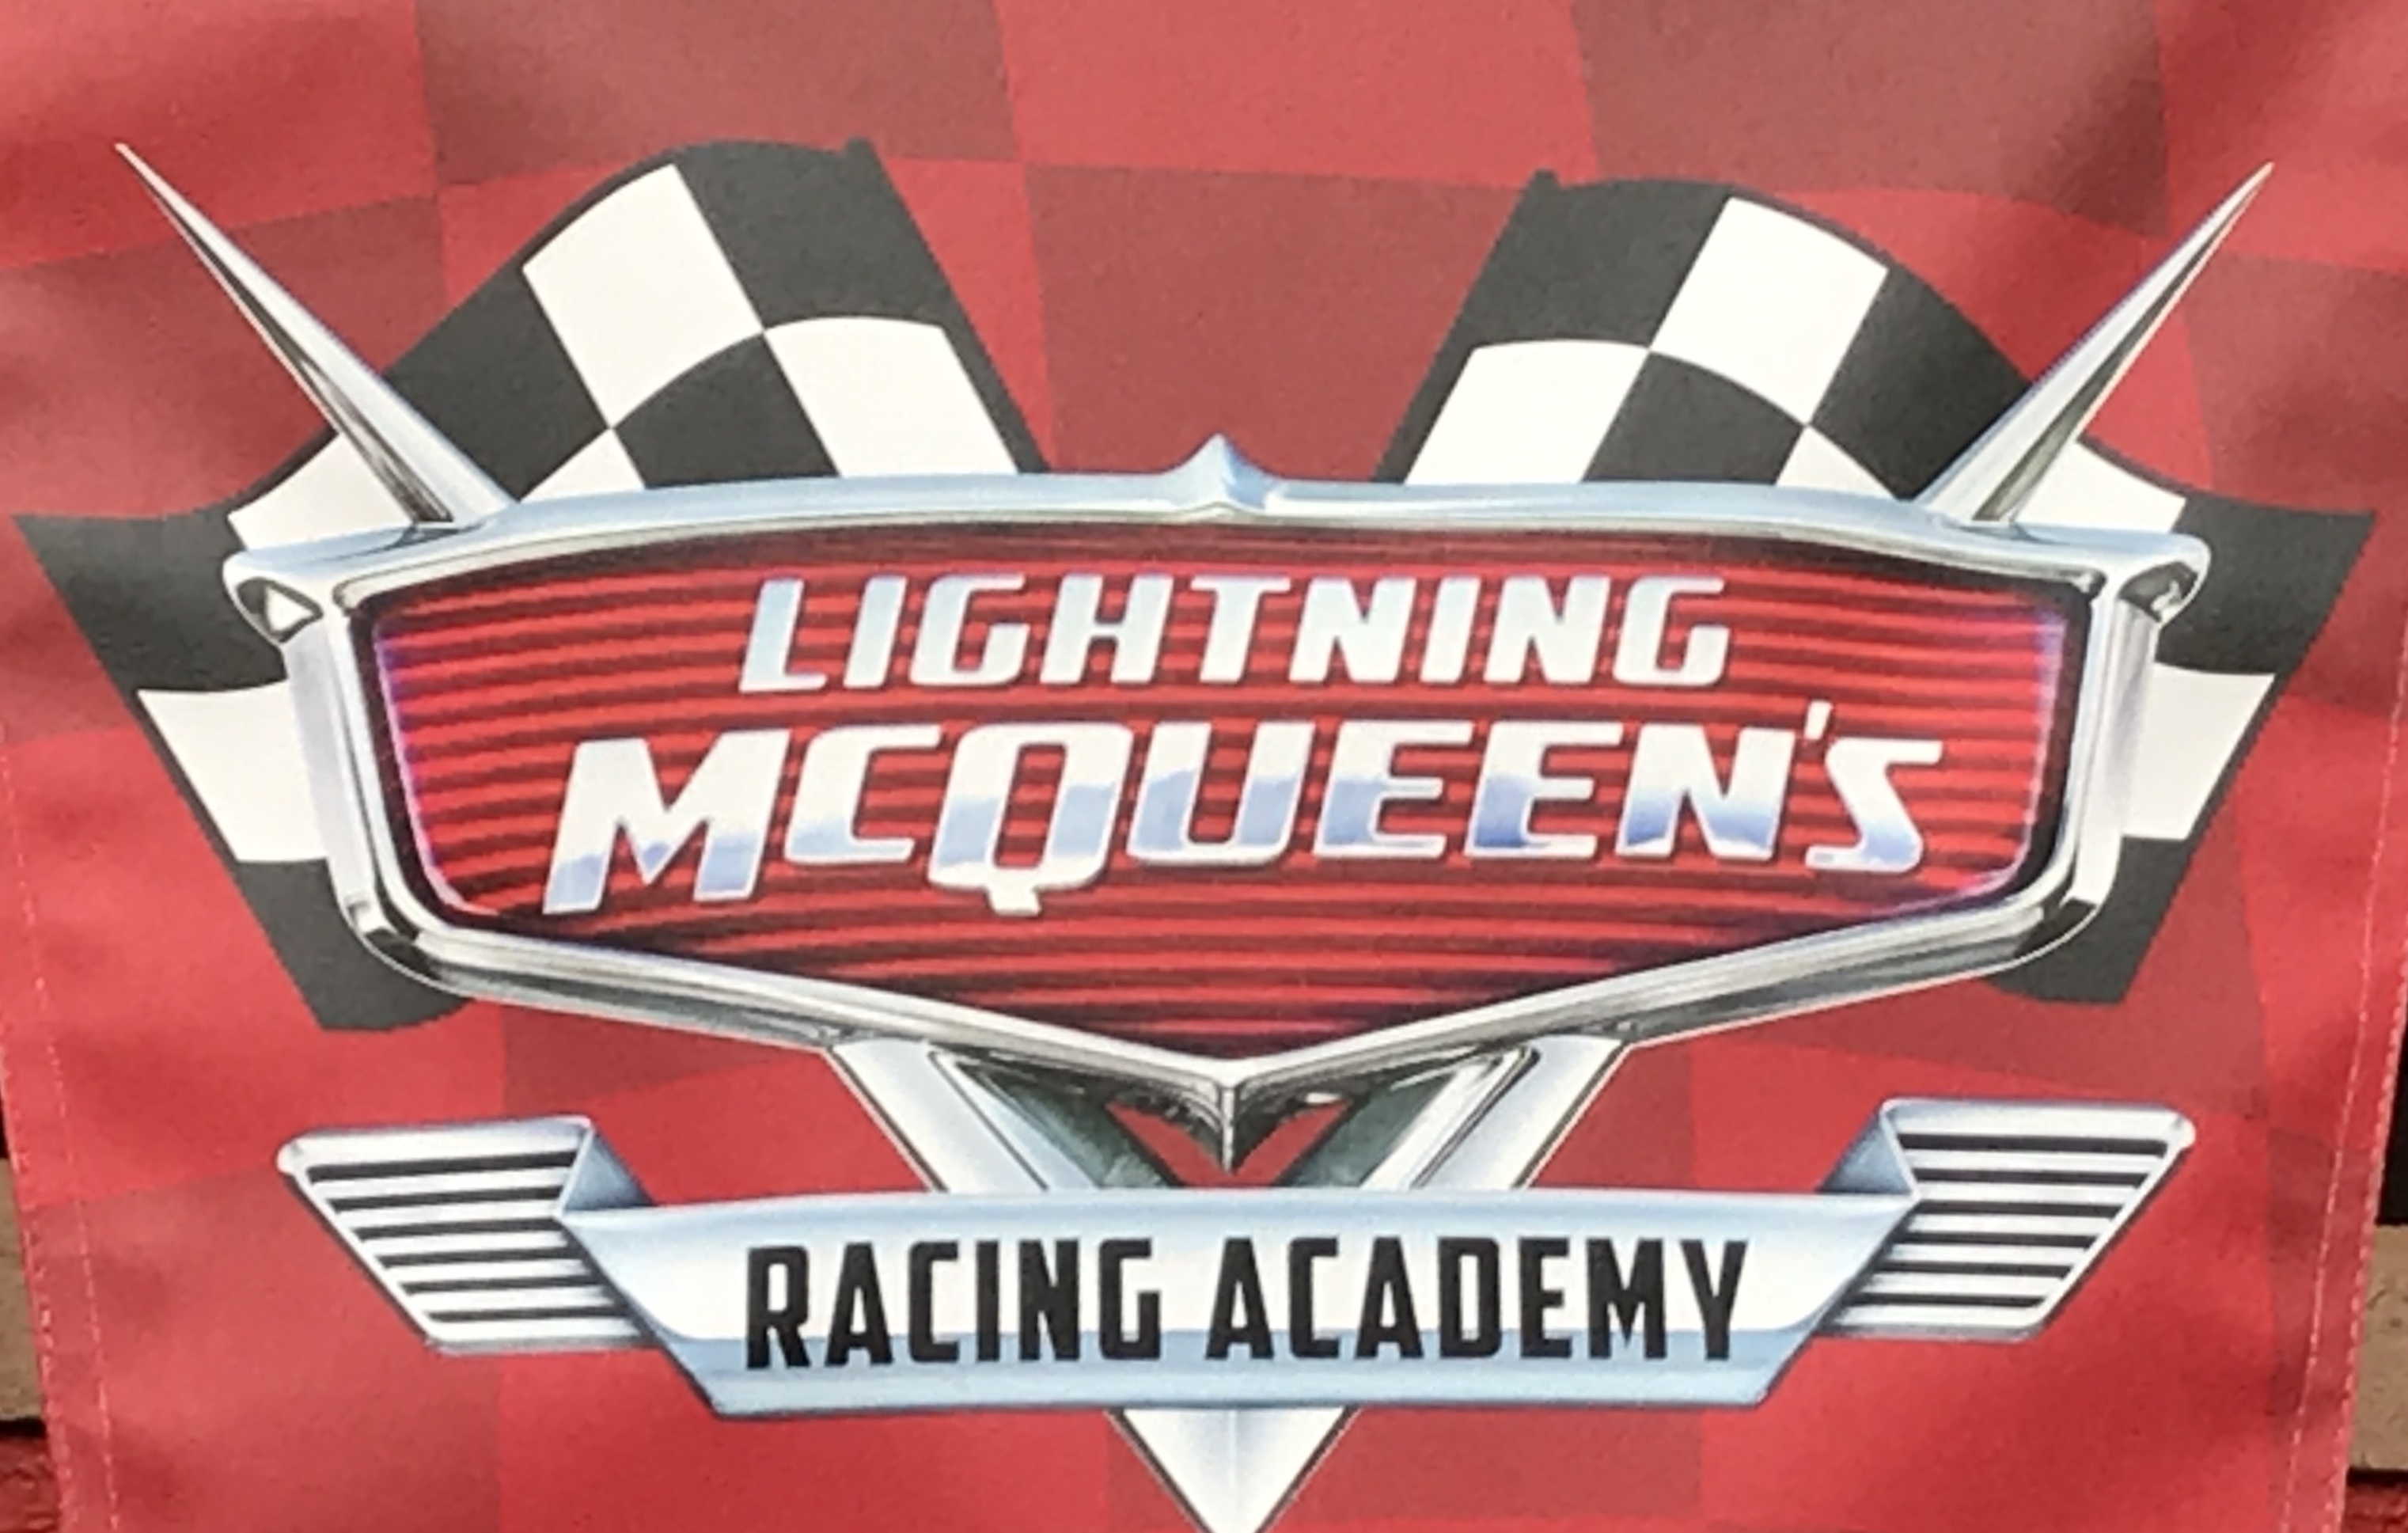 Lightning McQueen's Racing Academy Photos & Review  Disney world tickets,  Disney tourist blog, Lightning mcqueen